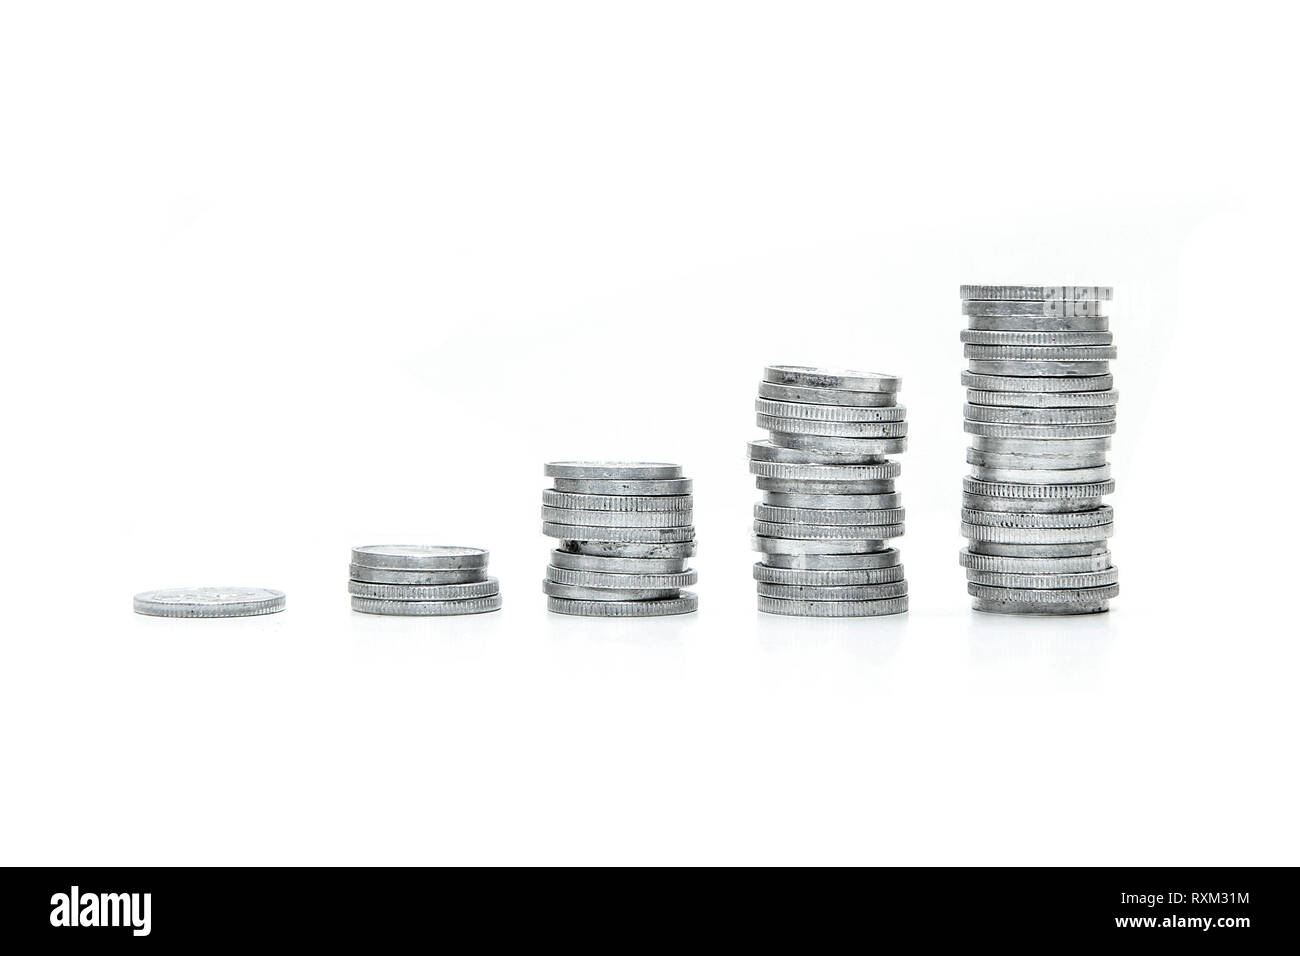 Eine Spalte mit kleinen Münzen von der niedrigsten bis zur höchsten sortiert. Symbolisiert das Wachstum der Preise oder Inflation. Stockfoto